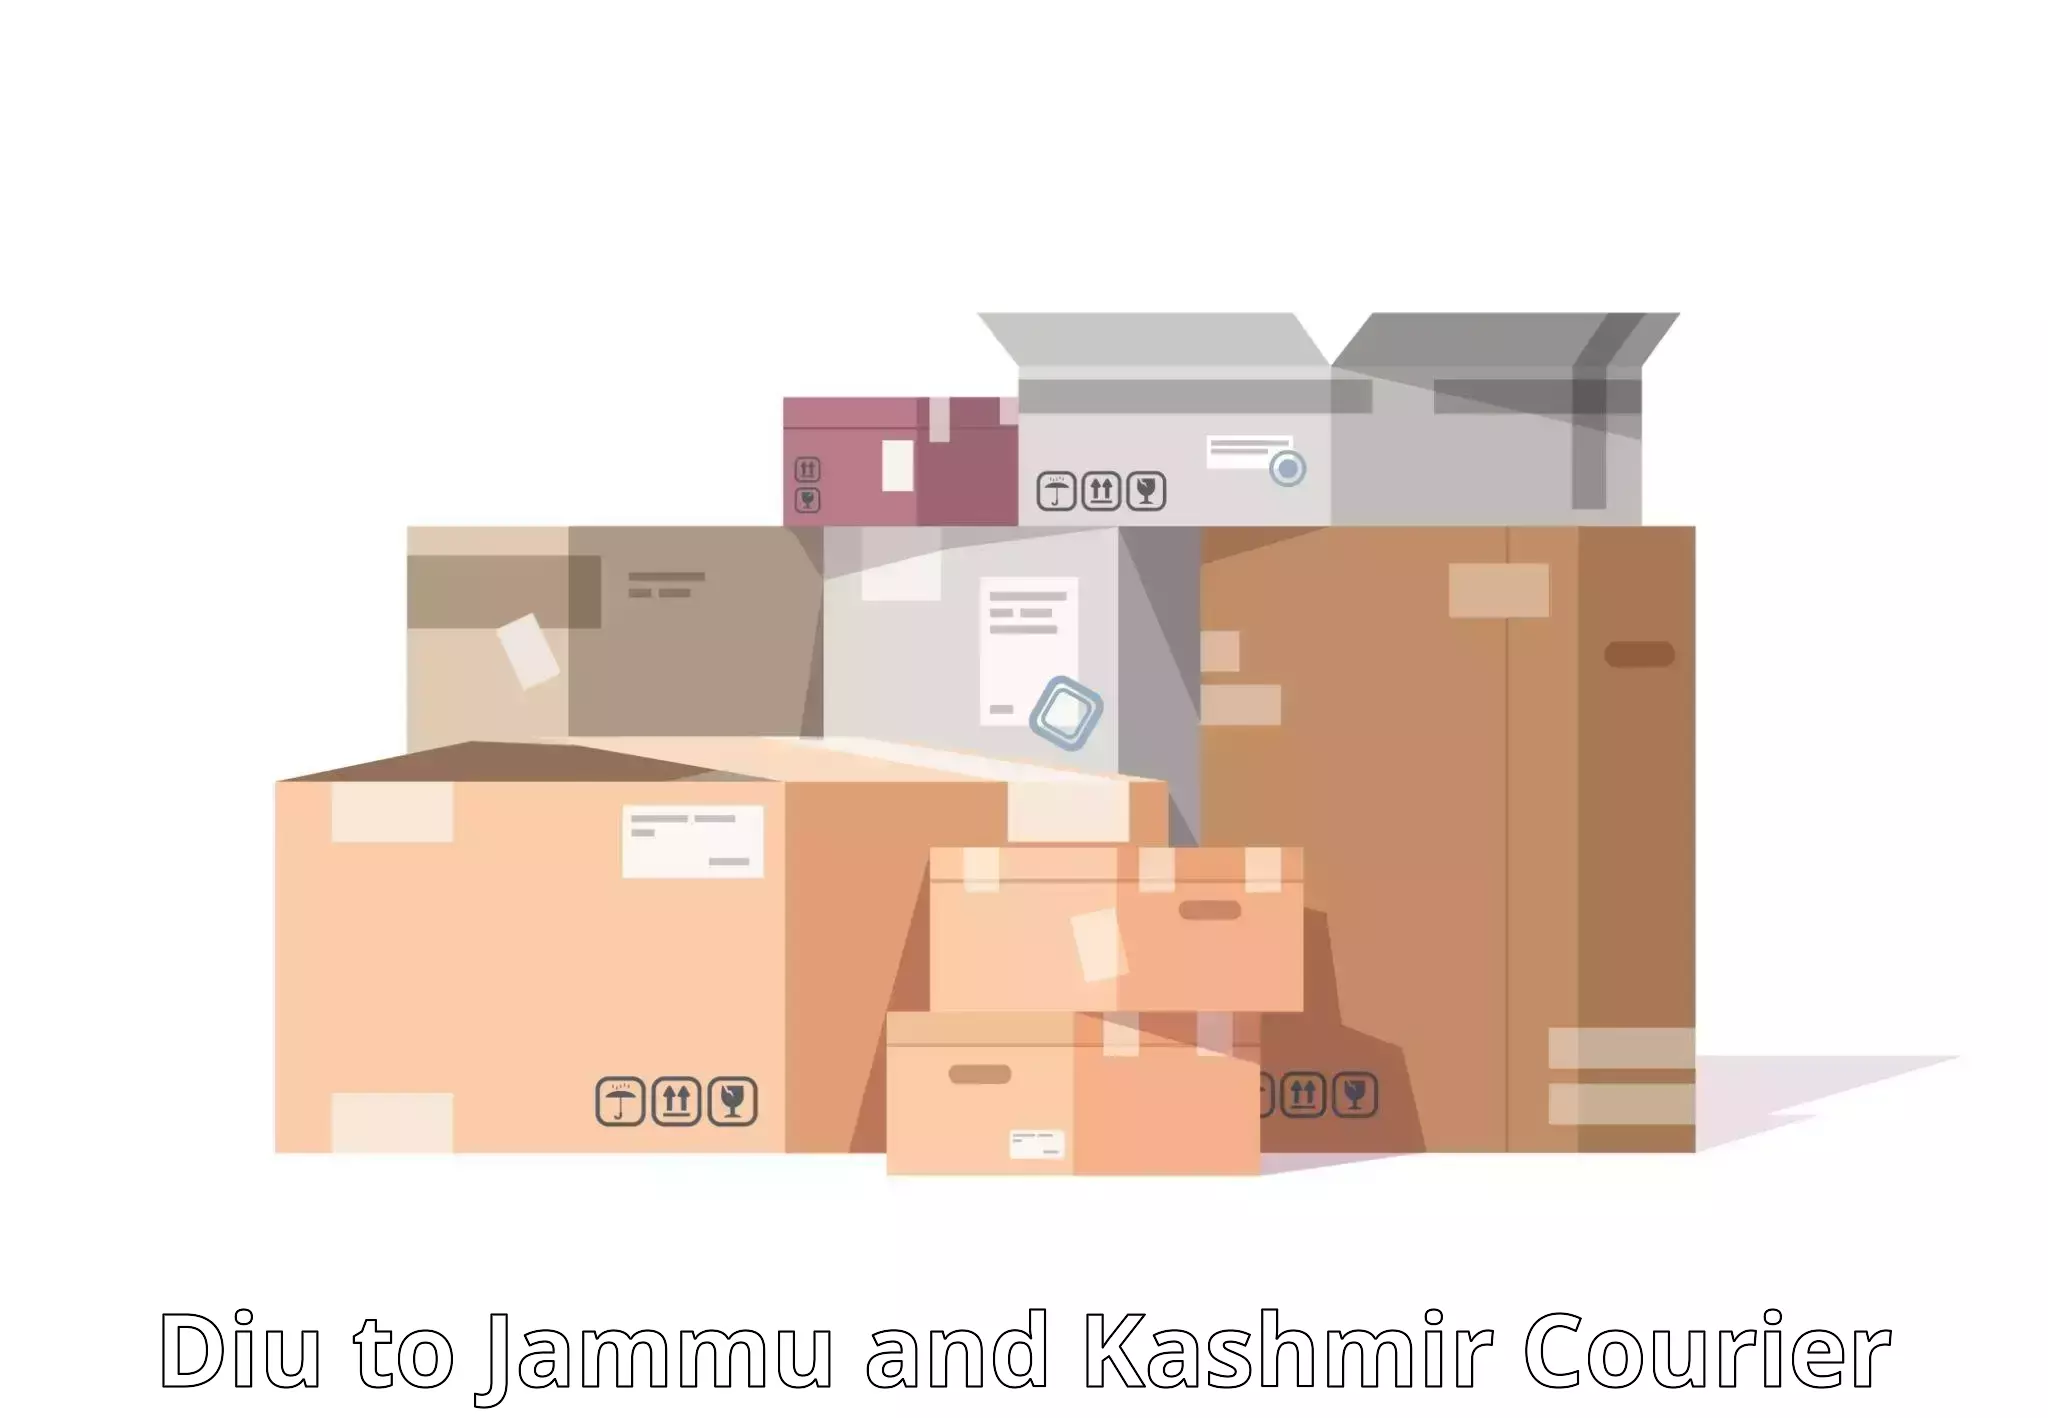 24/7 courier service Diu to Ramban